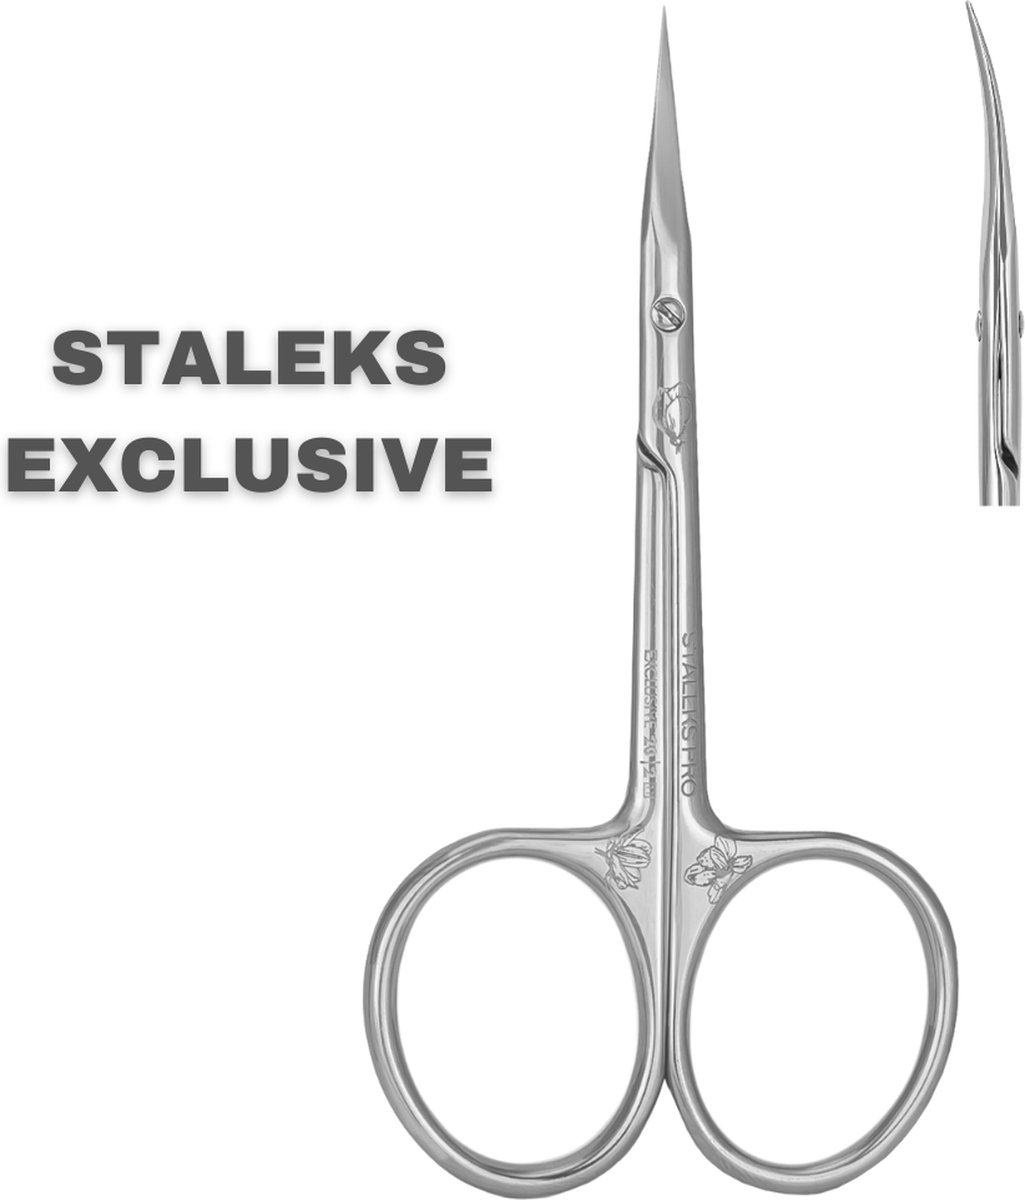 STALEKS - EXCLUSIVE- Manicure/nagelriem schaar - type 20/2 - PRECISIE tool - PROFESSIONELE nagelriem schaar - zeer duurzaam